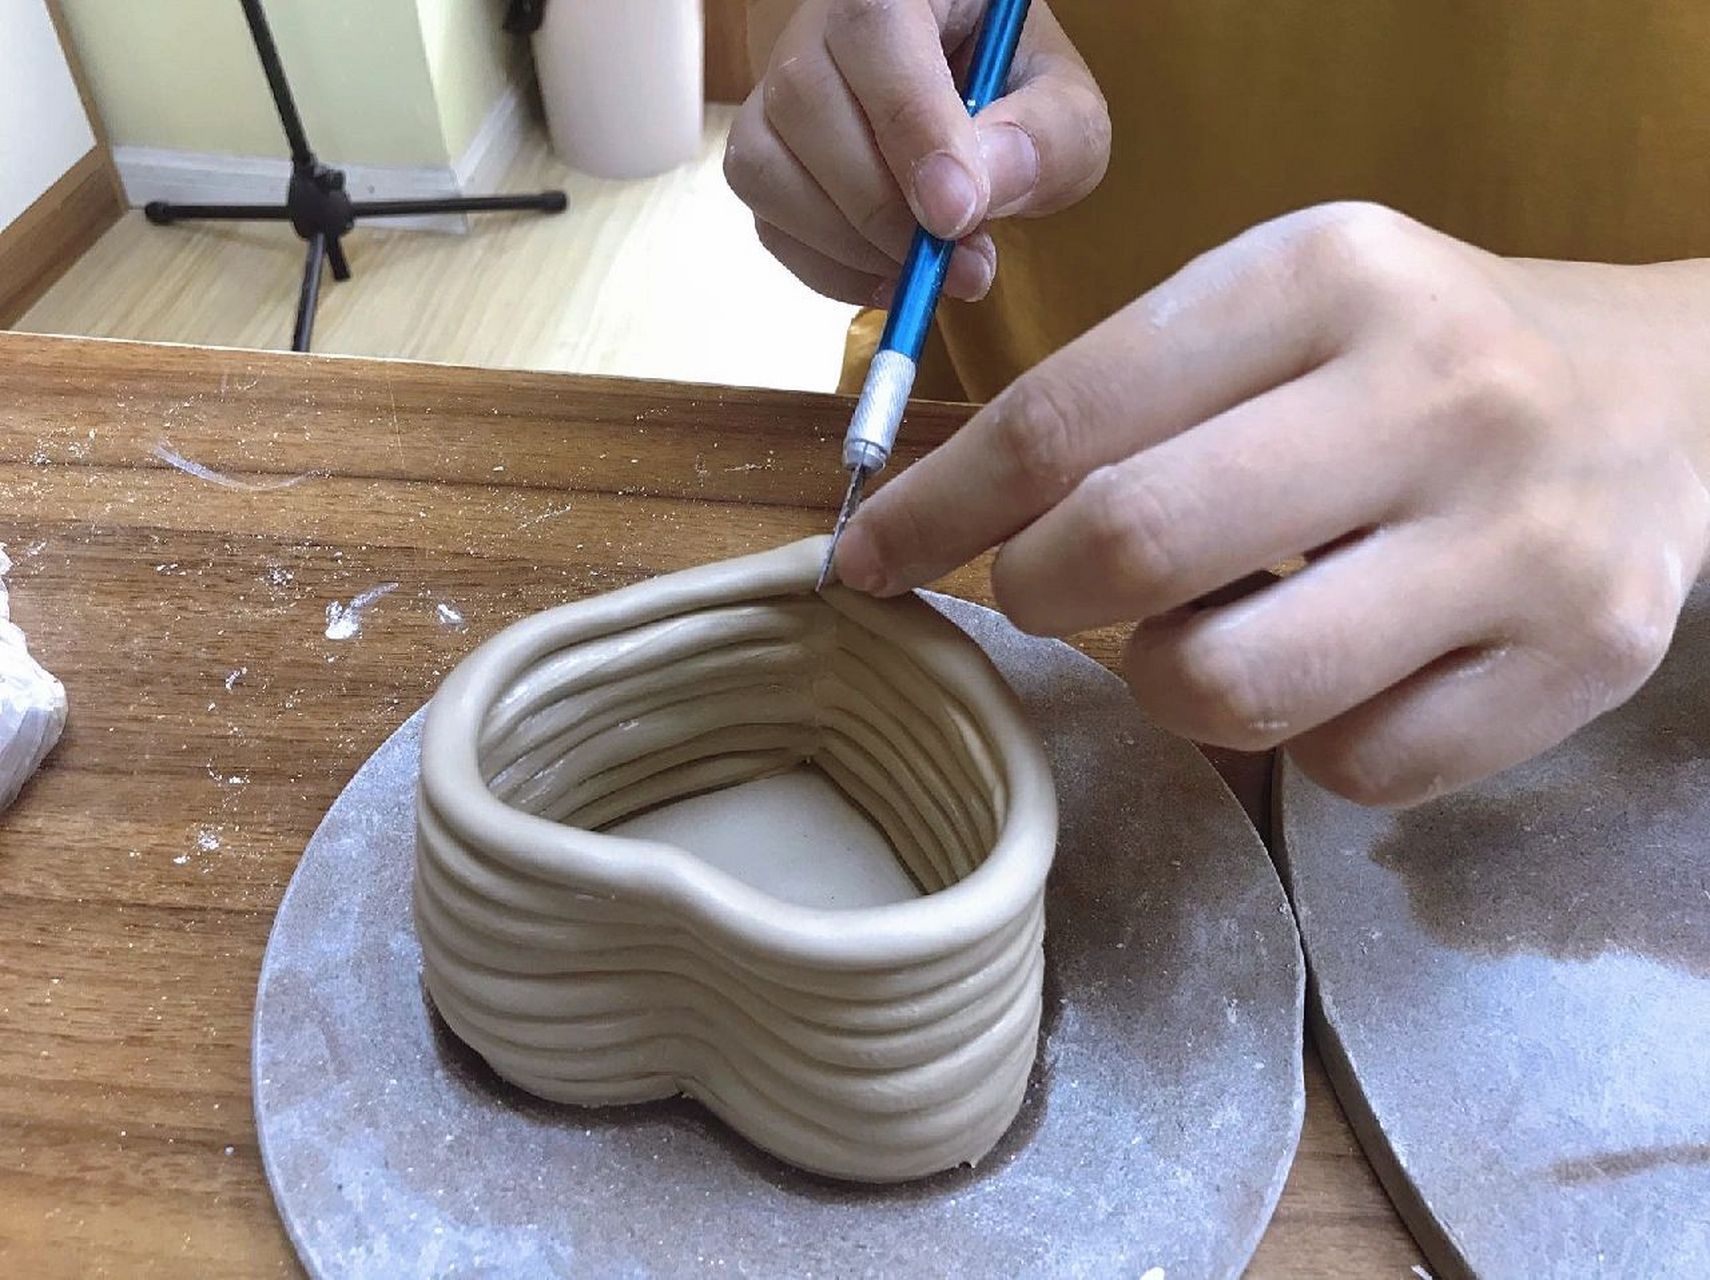 这是一节以泥条盘筑法成型的陶艺课程,首先要用泥板切出一个爱心型的